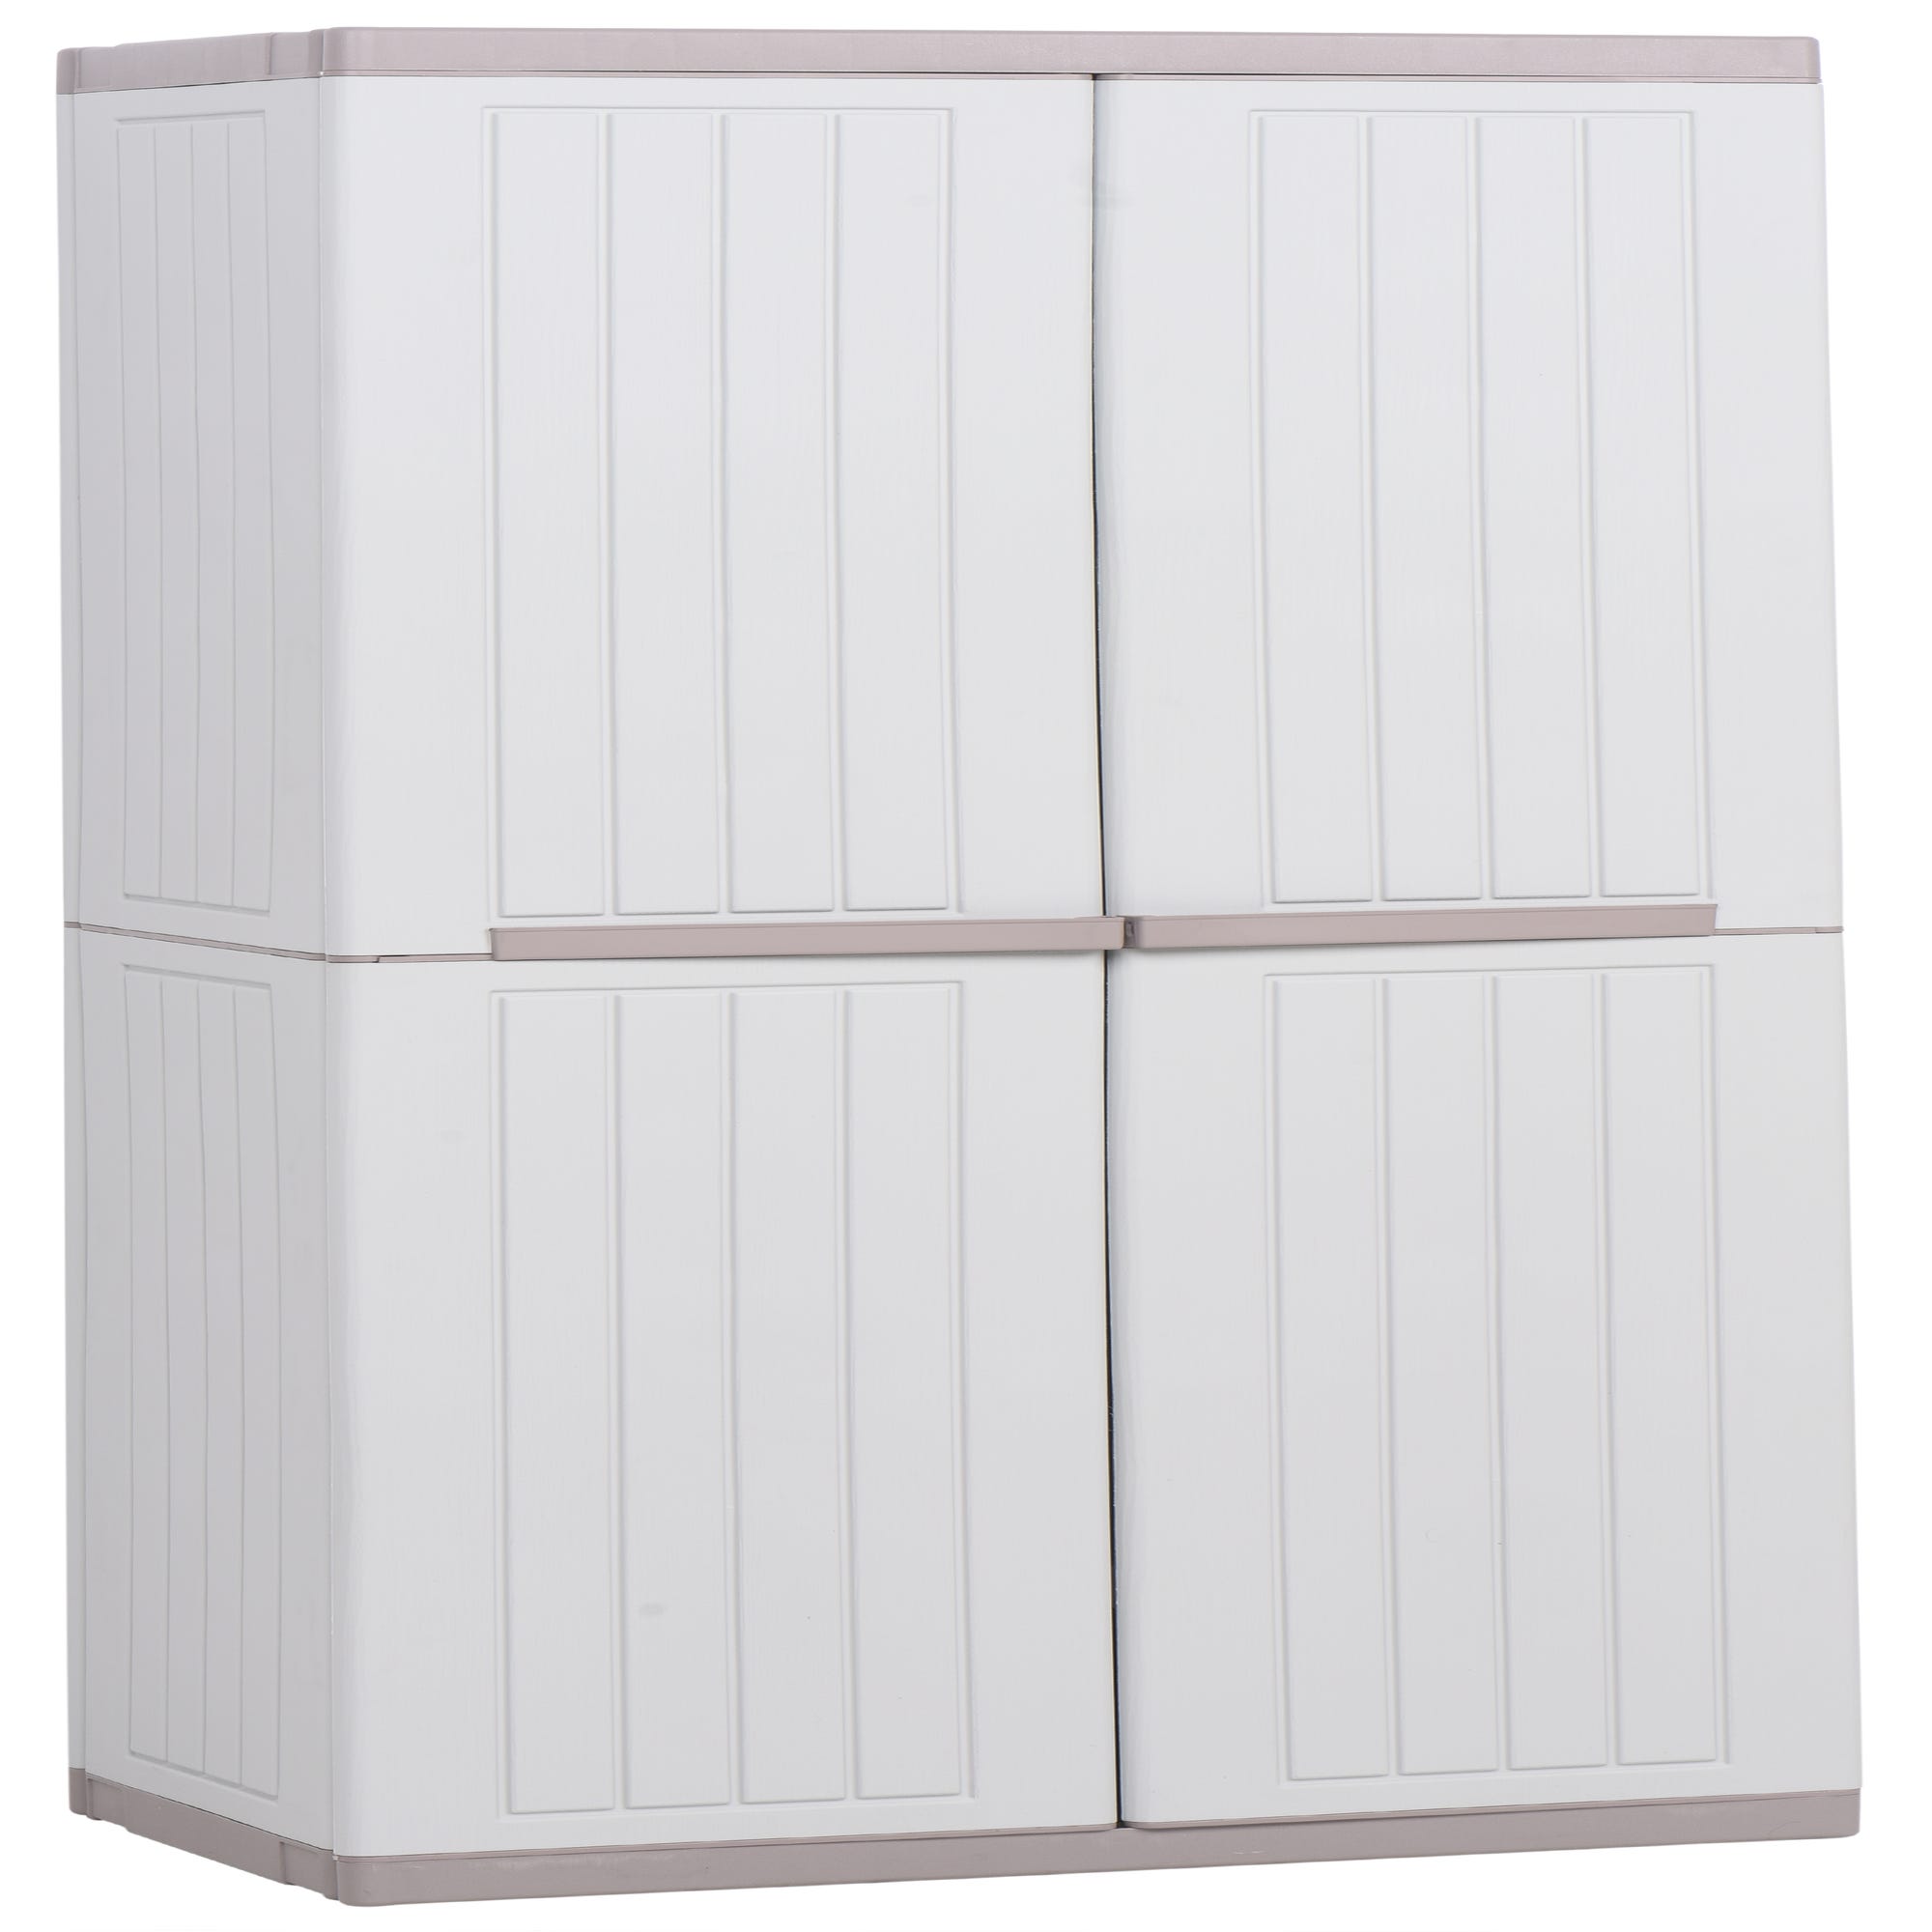 Armario alto baldas de resina Wave 90x180x54 cm color blanco 2 puertas